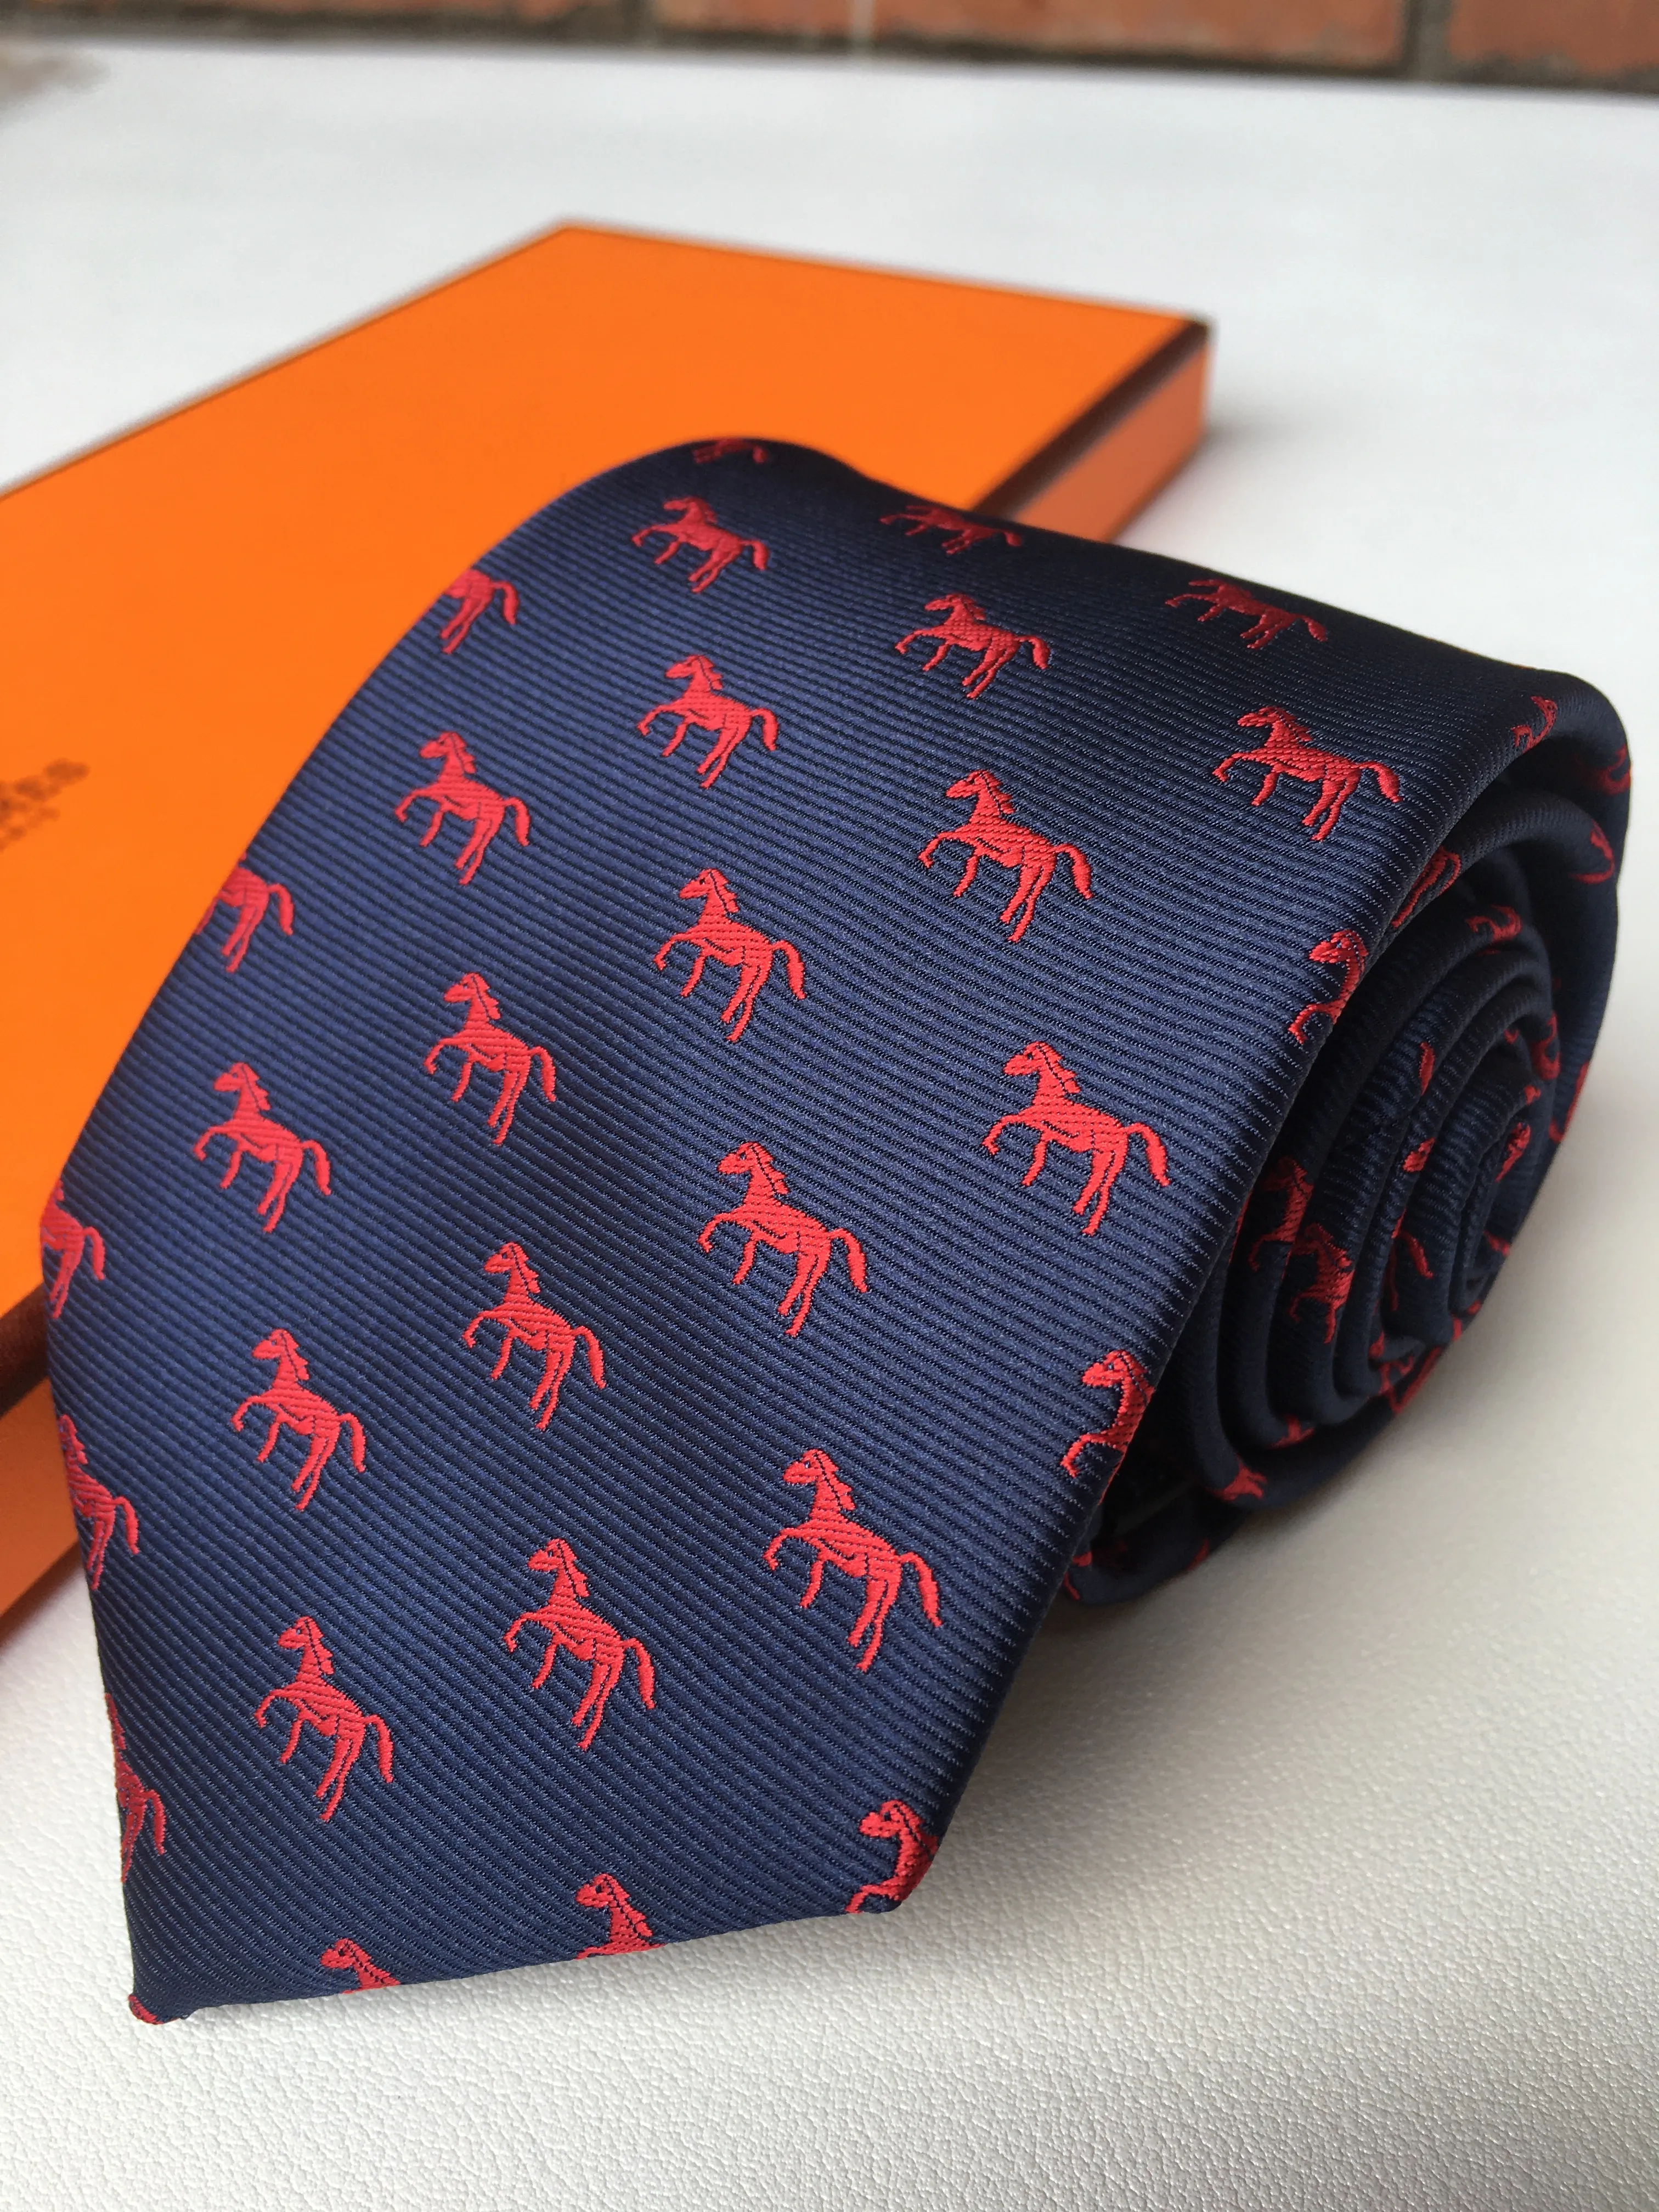 Business Designer cravatta da uomo cravatta di seta di alta qualità Cravatta uomo maschio cravatta da lavoro da business krawatte con scatola Lux269q